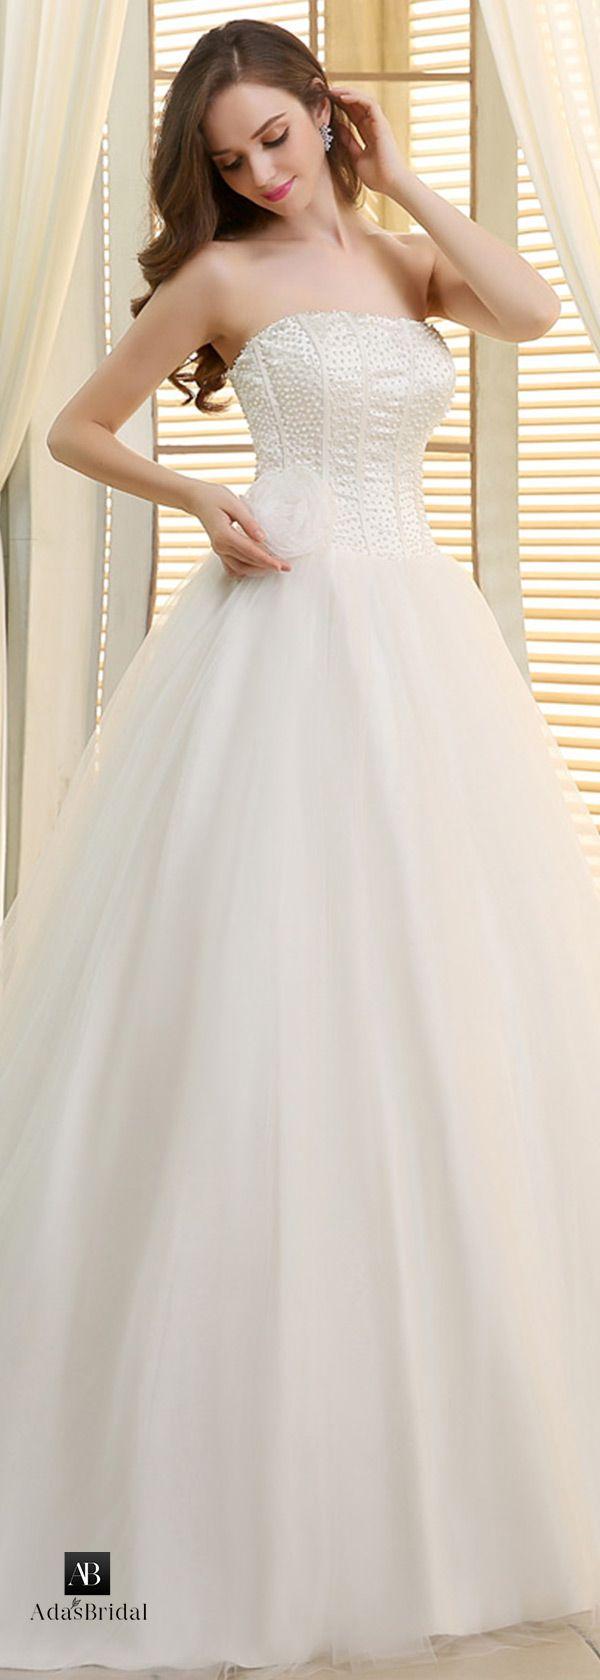 زفاف - AdasBridal Wedding Dresses